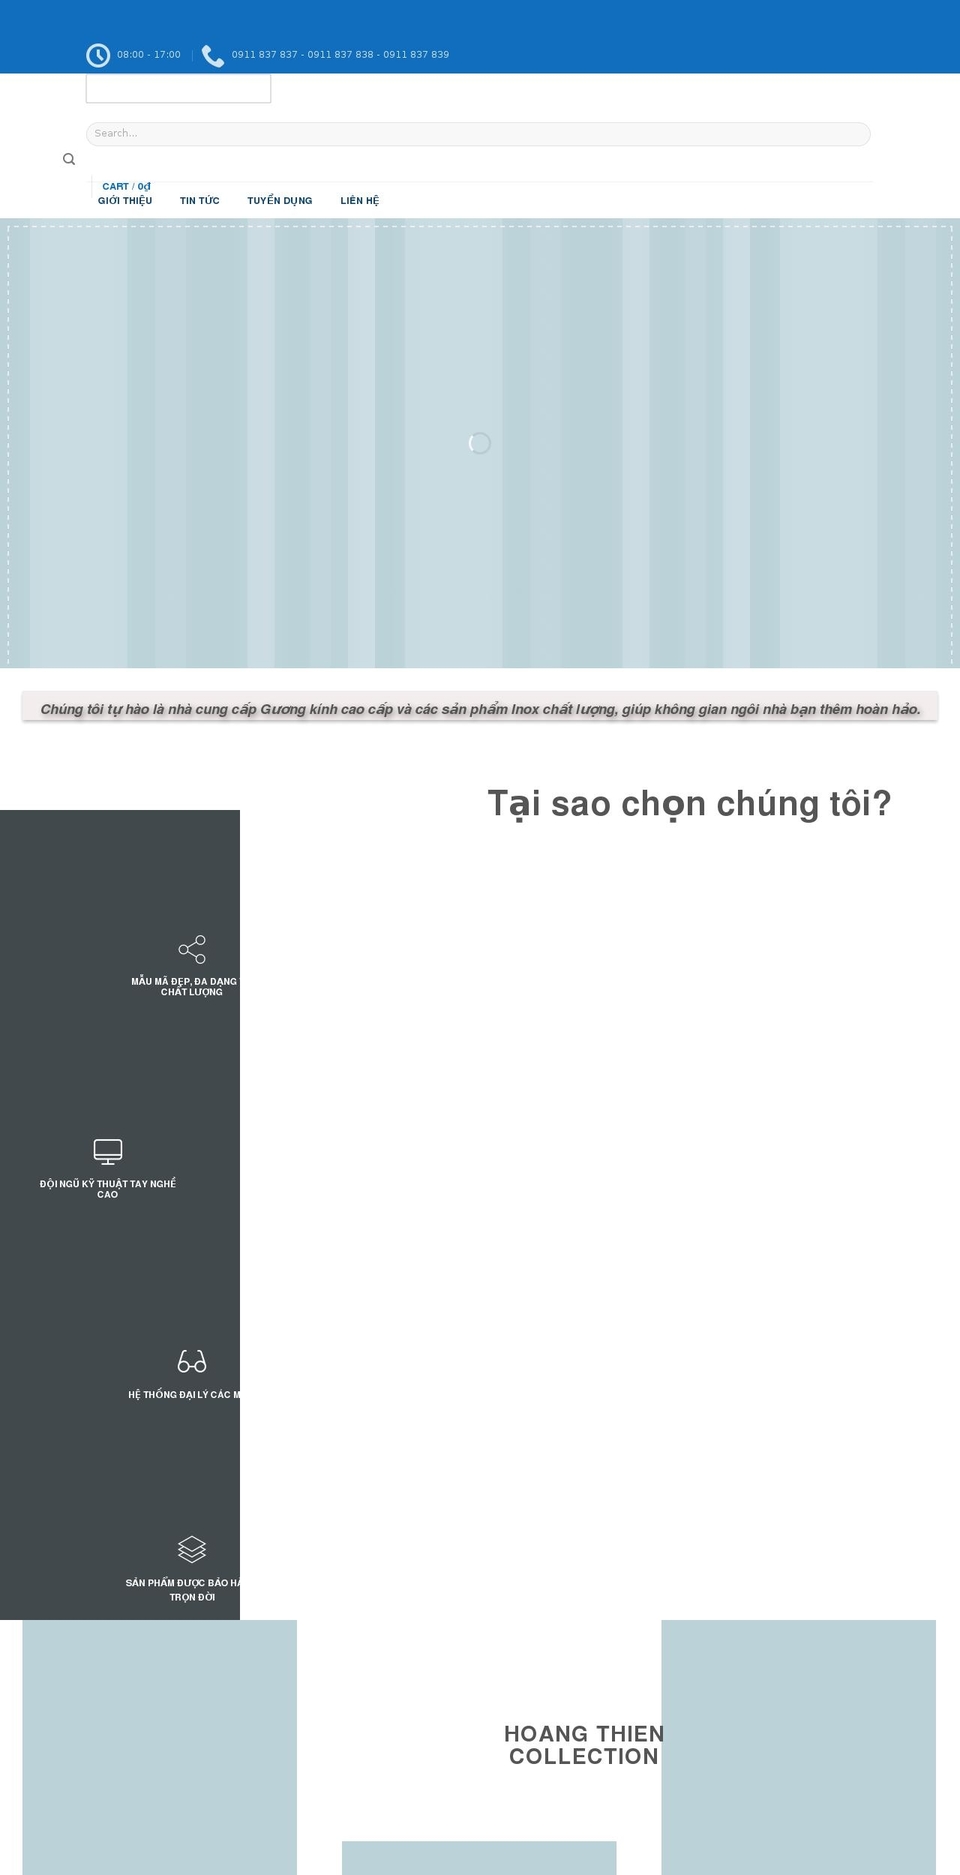 hoangthien.vn shopify website screenshot